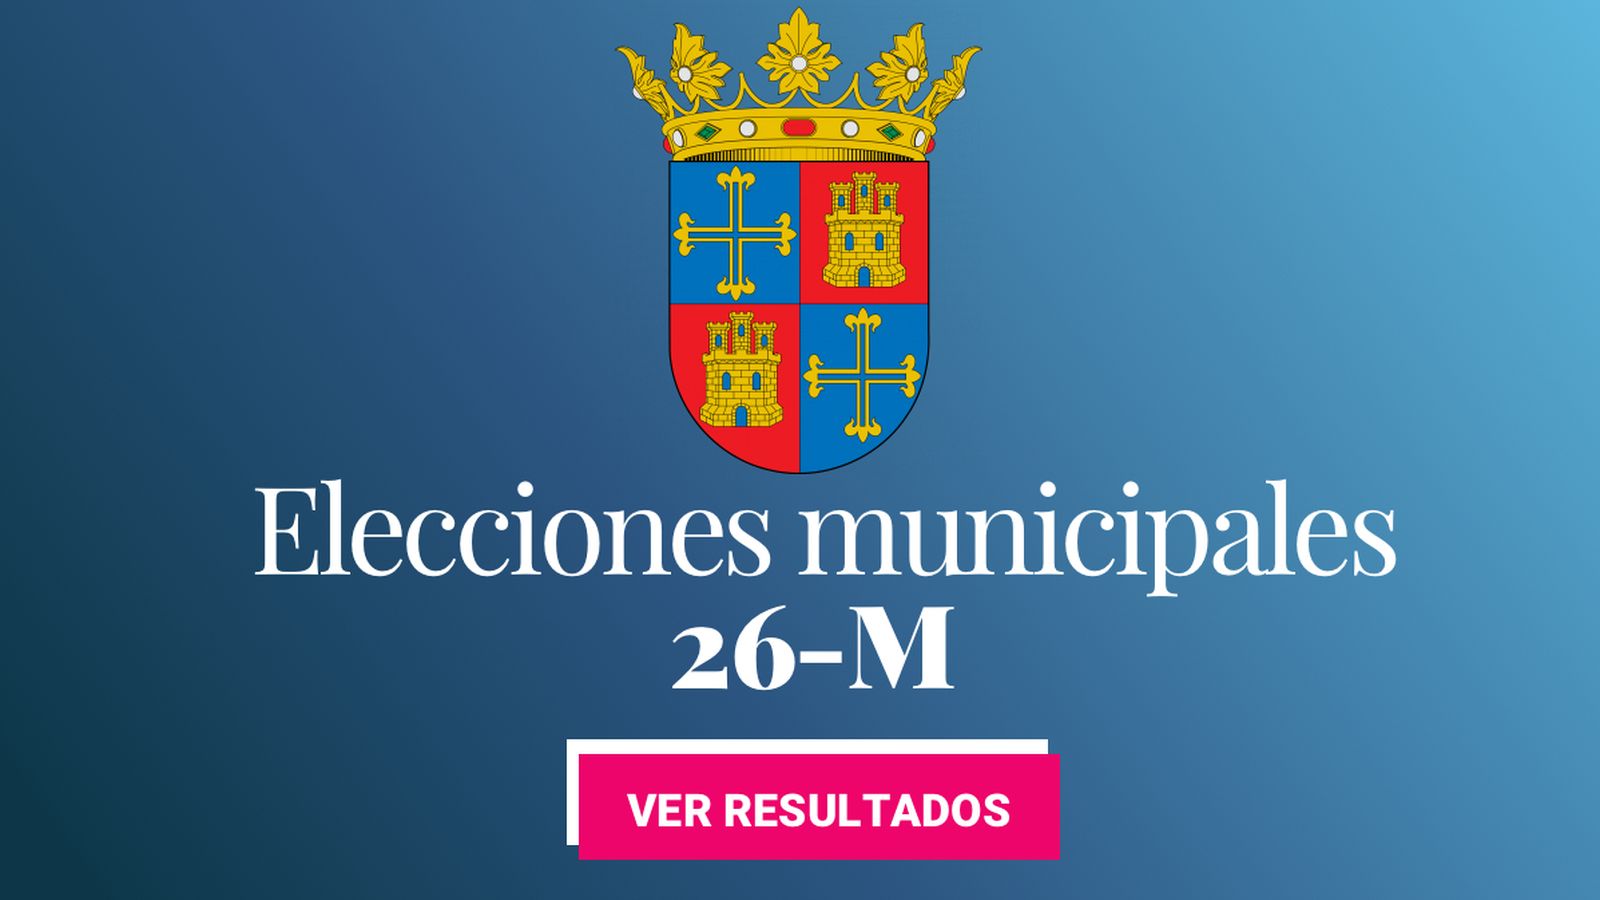 Foto: Elecciones municipales 2019 en Palencia. (C.C./EC)